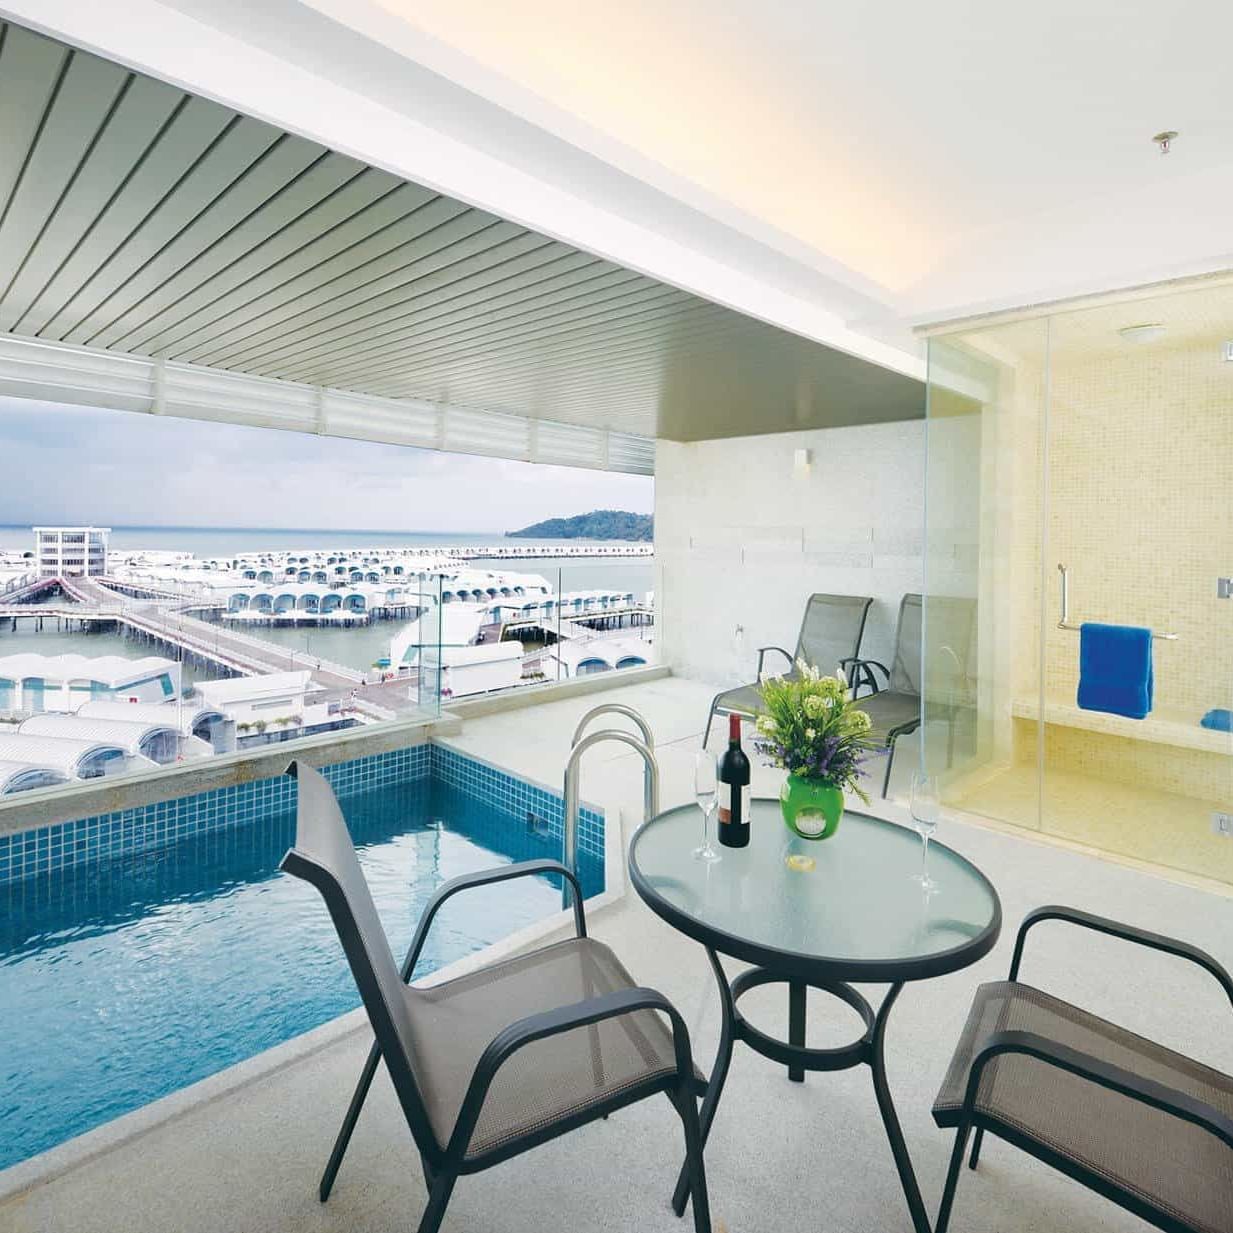 Raikan Raya Dengan Percutian “IDEAL-FITRI” – Nikmati Tawaran Bilik Menarik di Lexis Hotels & Resorts dari 18 hingga 26 April